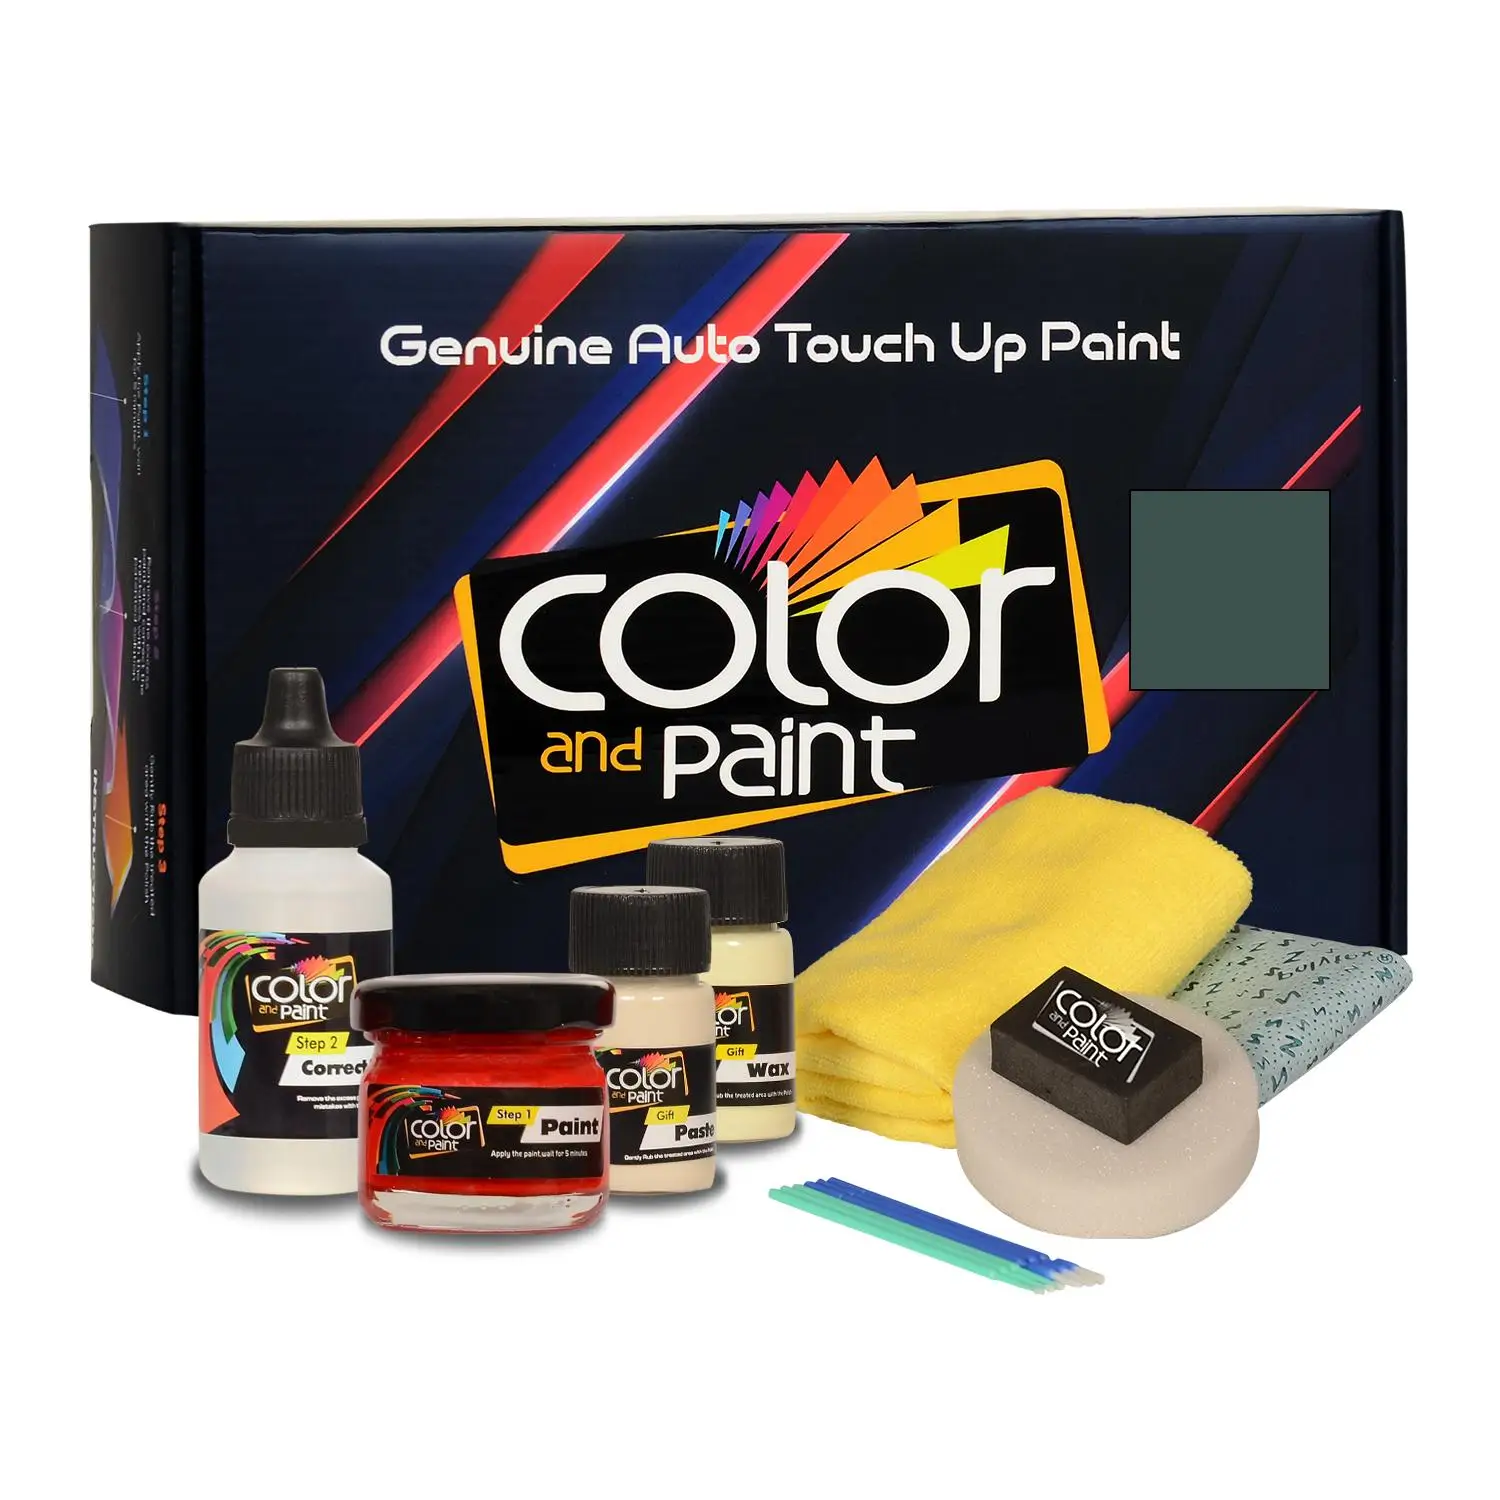 

Color and Paint compatible with Peugeot Automotive Touch Up Paint - VERT DEVON - 332 - Basic Care